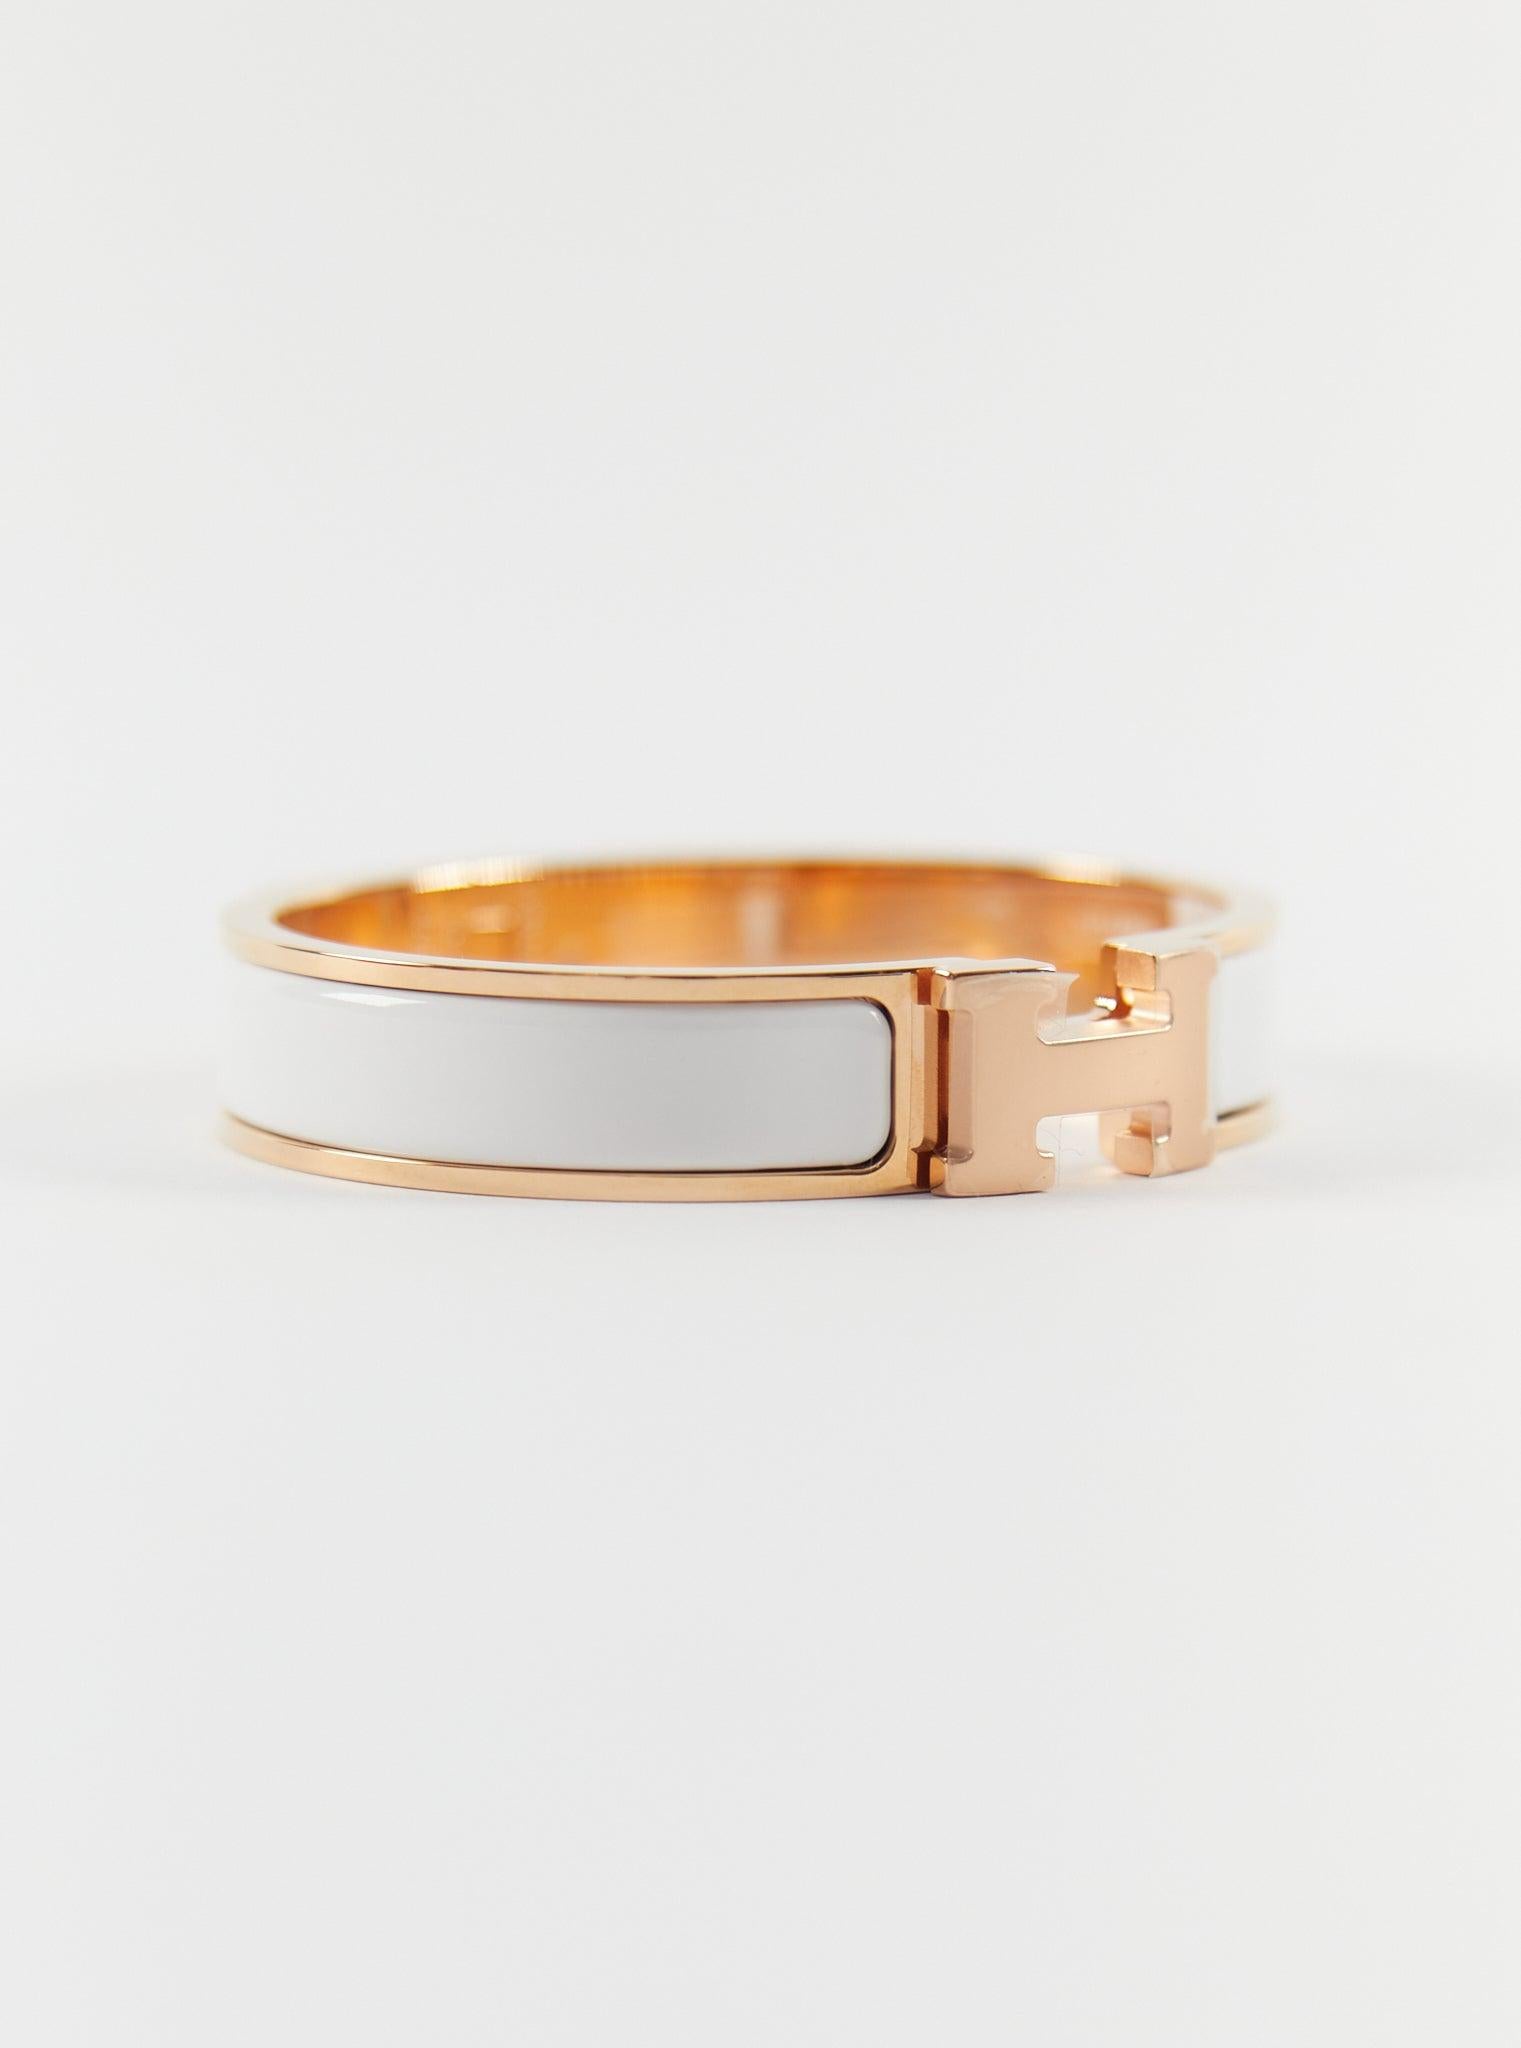 Hermès Clic H PM Armband aus Weiß- und Roségold

Größe des Handgelenks: 16.8 cm  Breite: 12 mm

Hergestellt in Frankreich